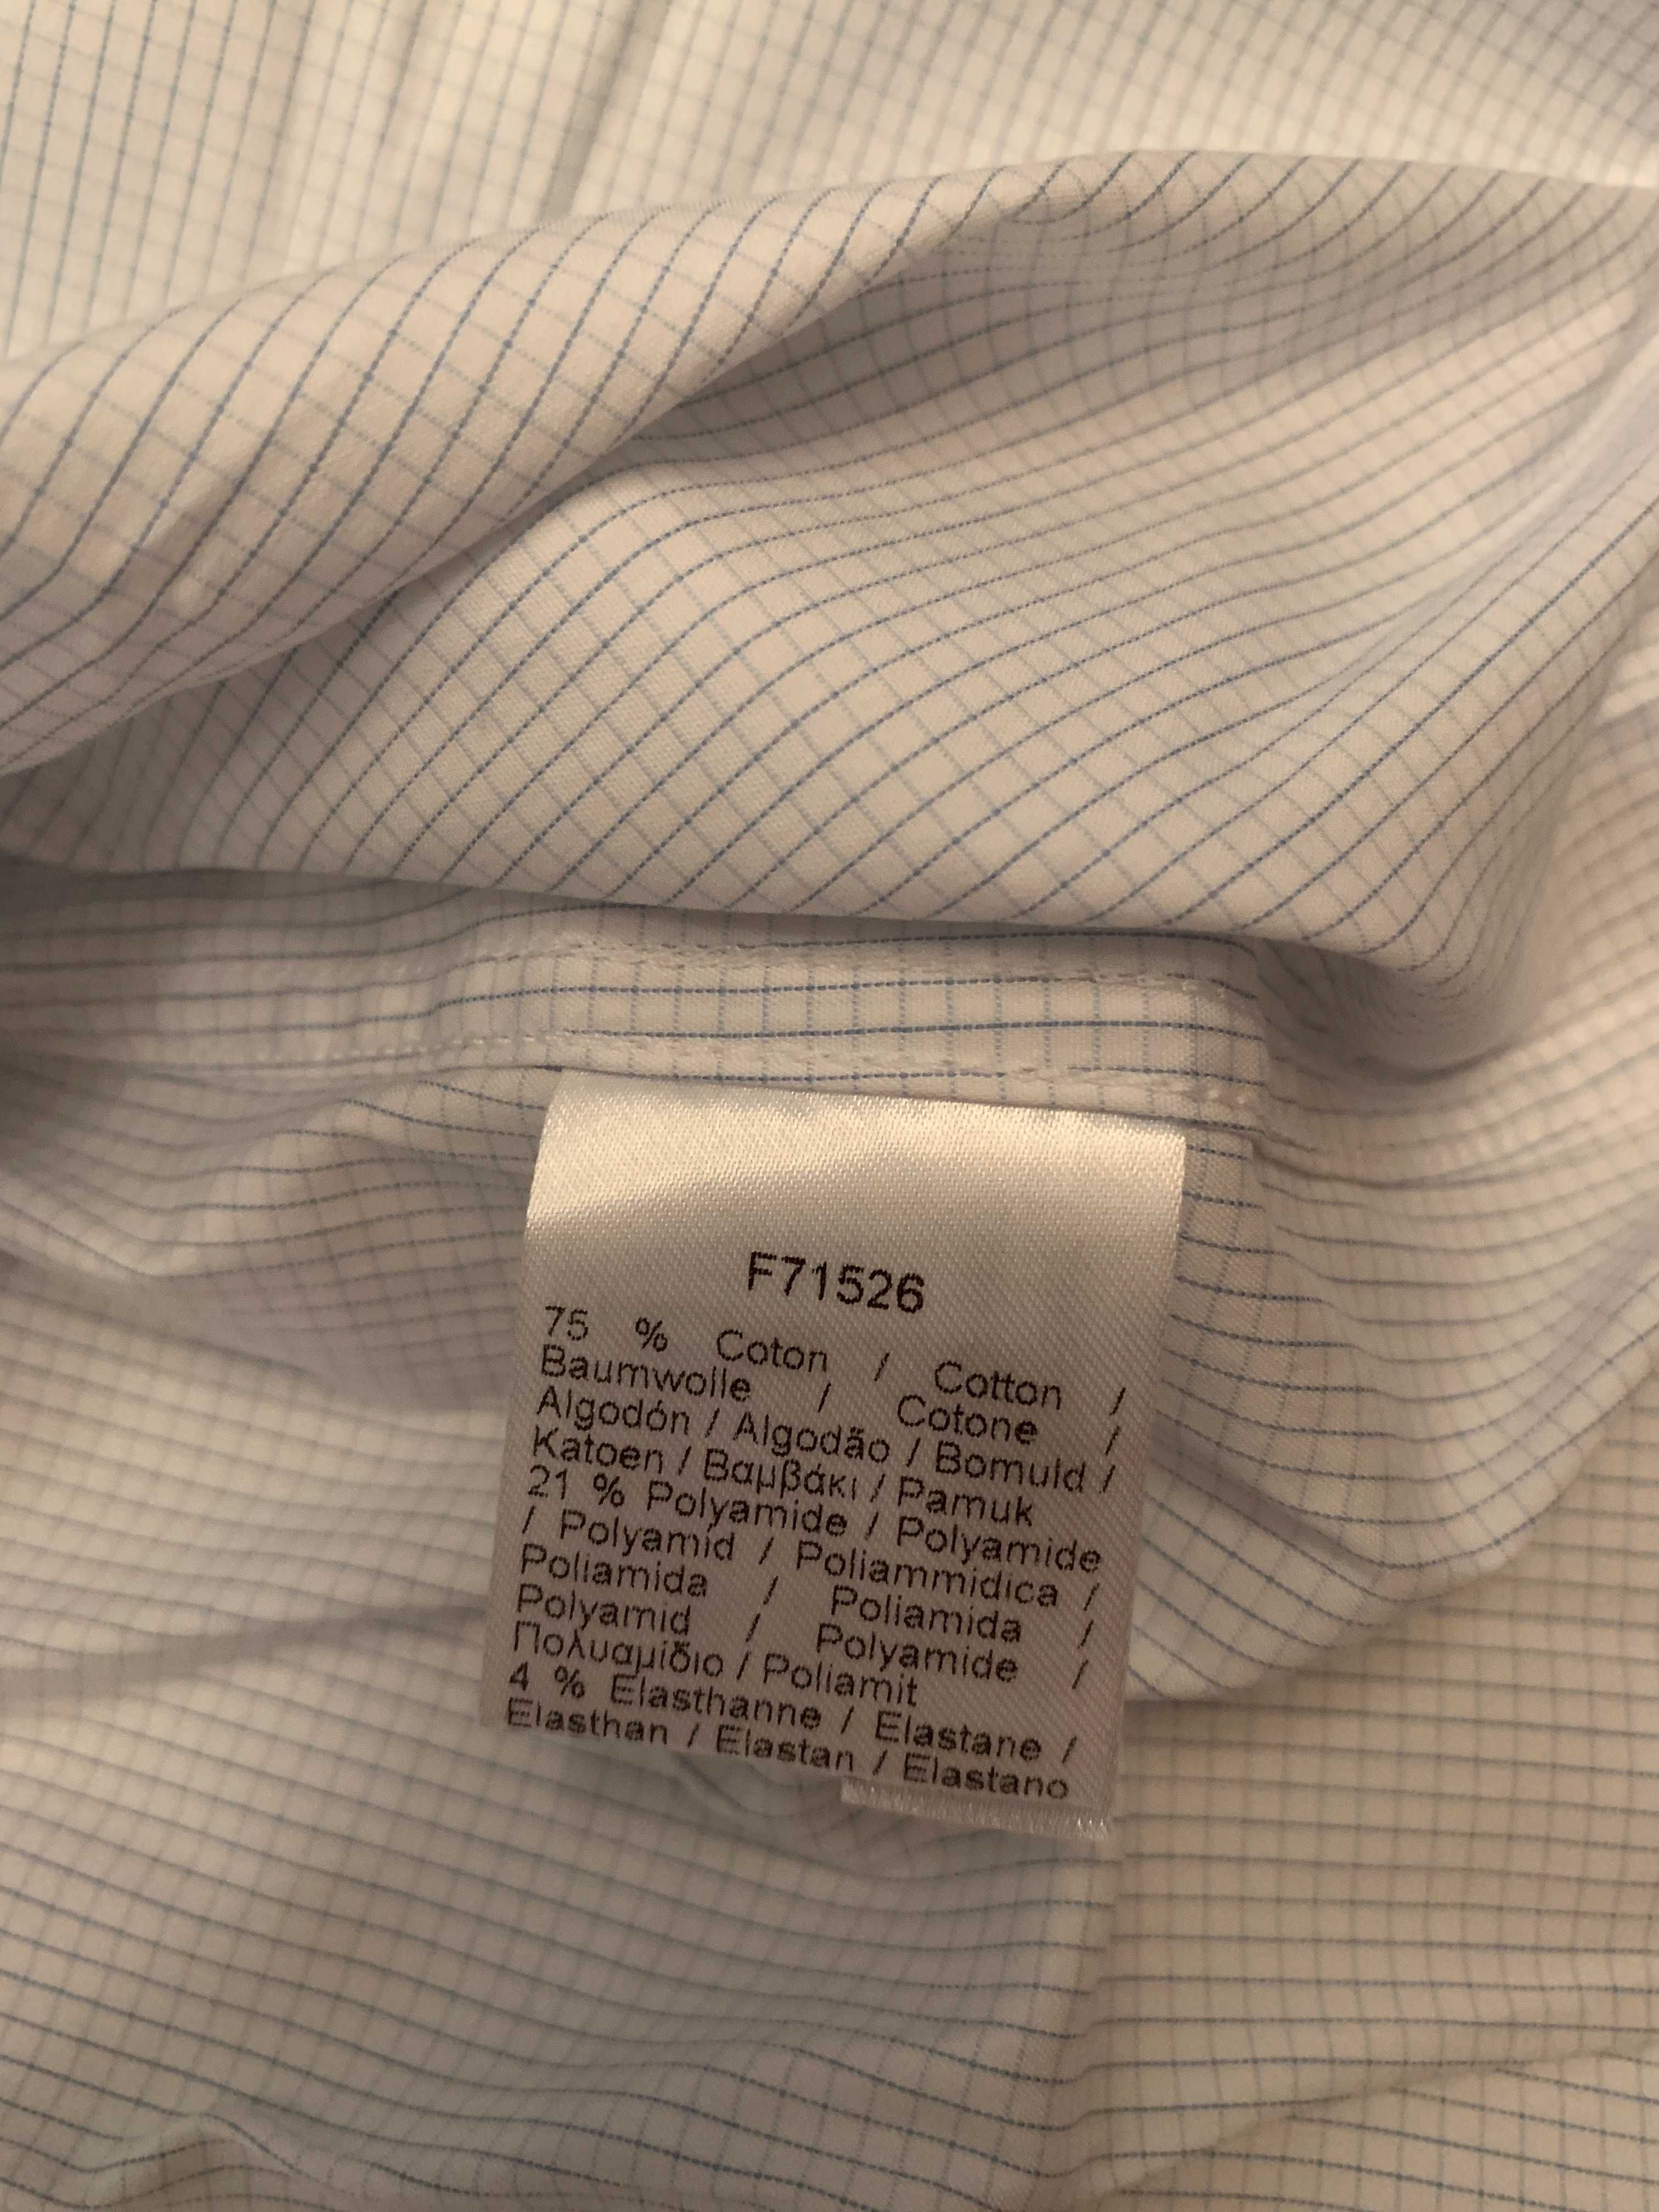 Мужская рубашка Lacoste оригинал, по воротнику размер 41